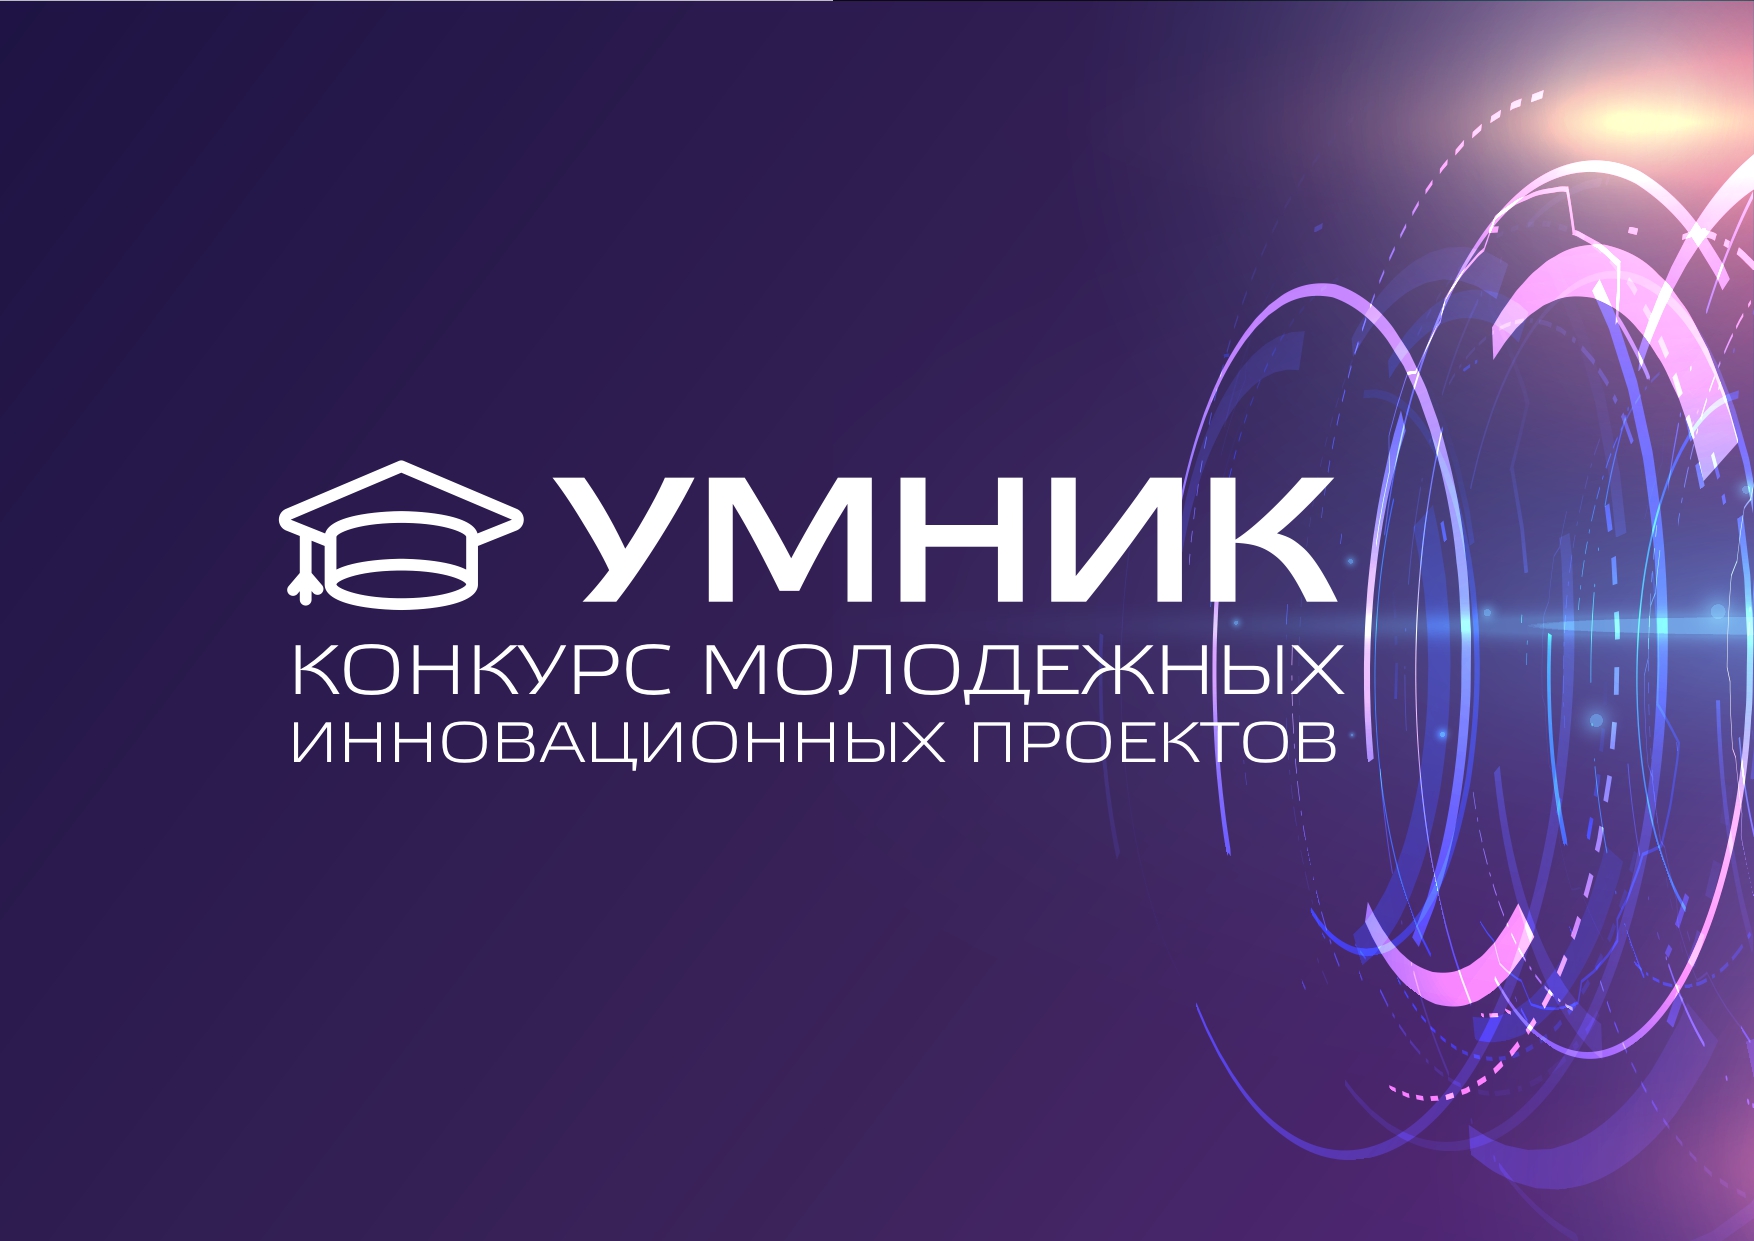  Продолжается приём заявок для участия в программе «УМНИК-2021»